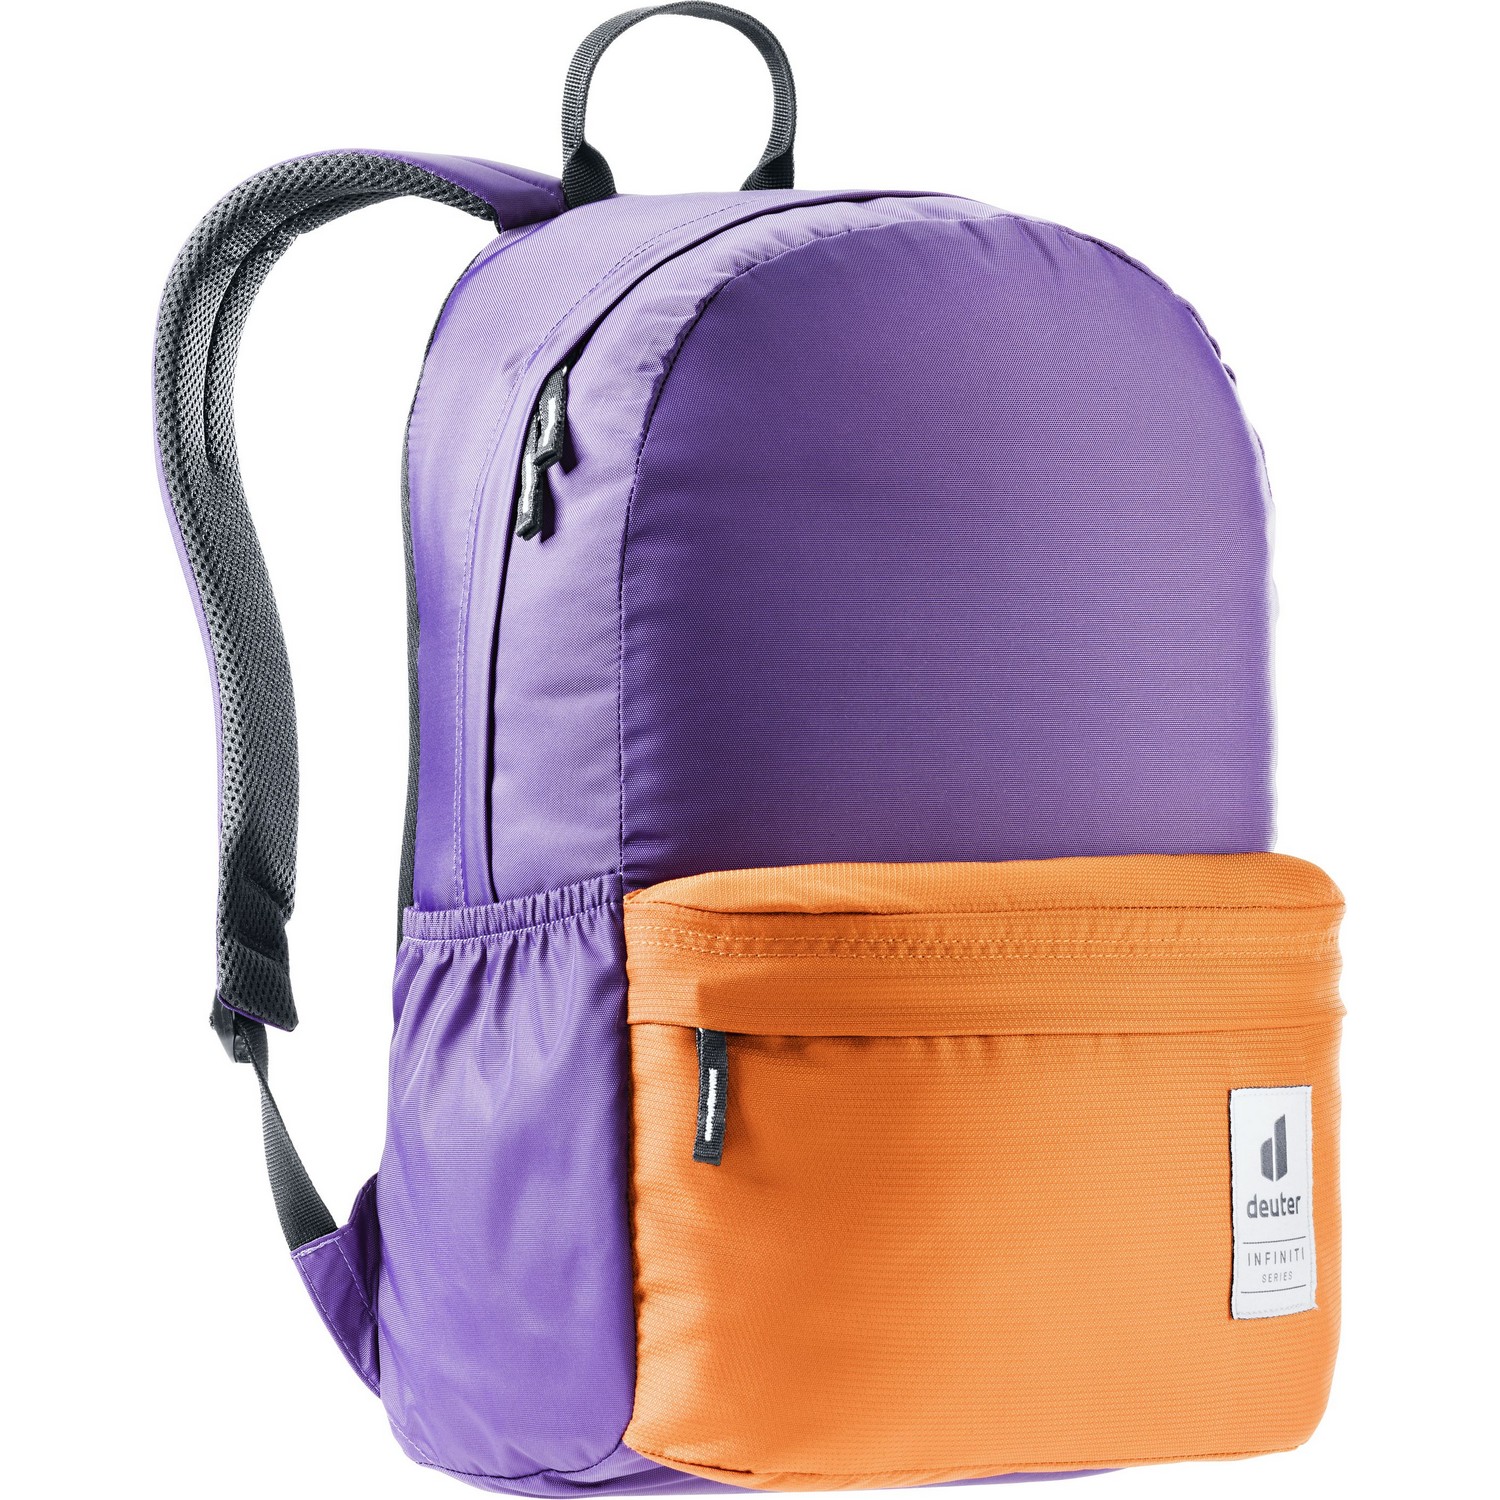 Deuter 'Infiniti Backpack' Rucksack violet-mandarine